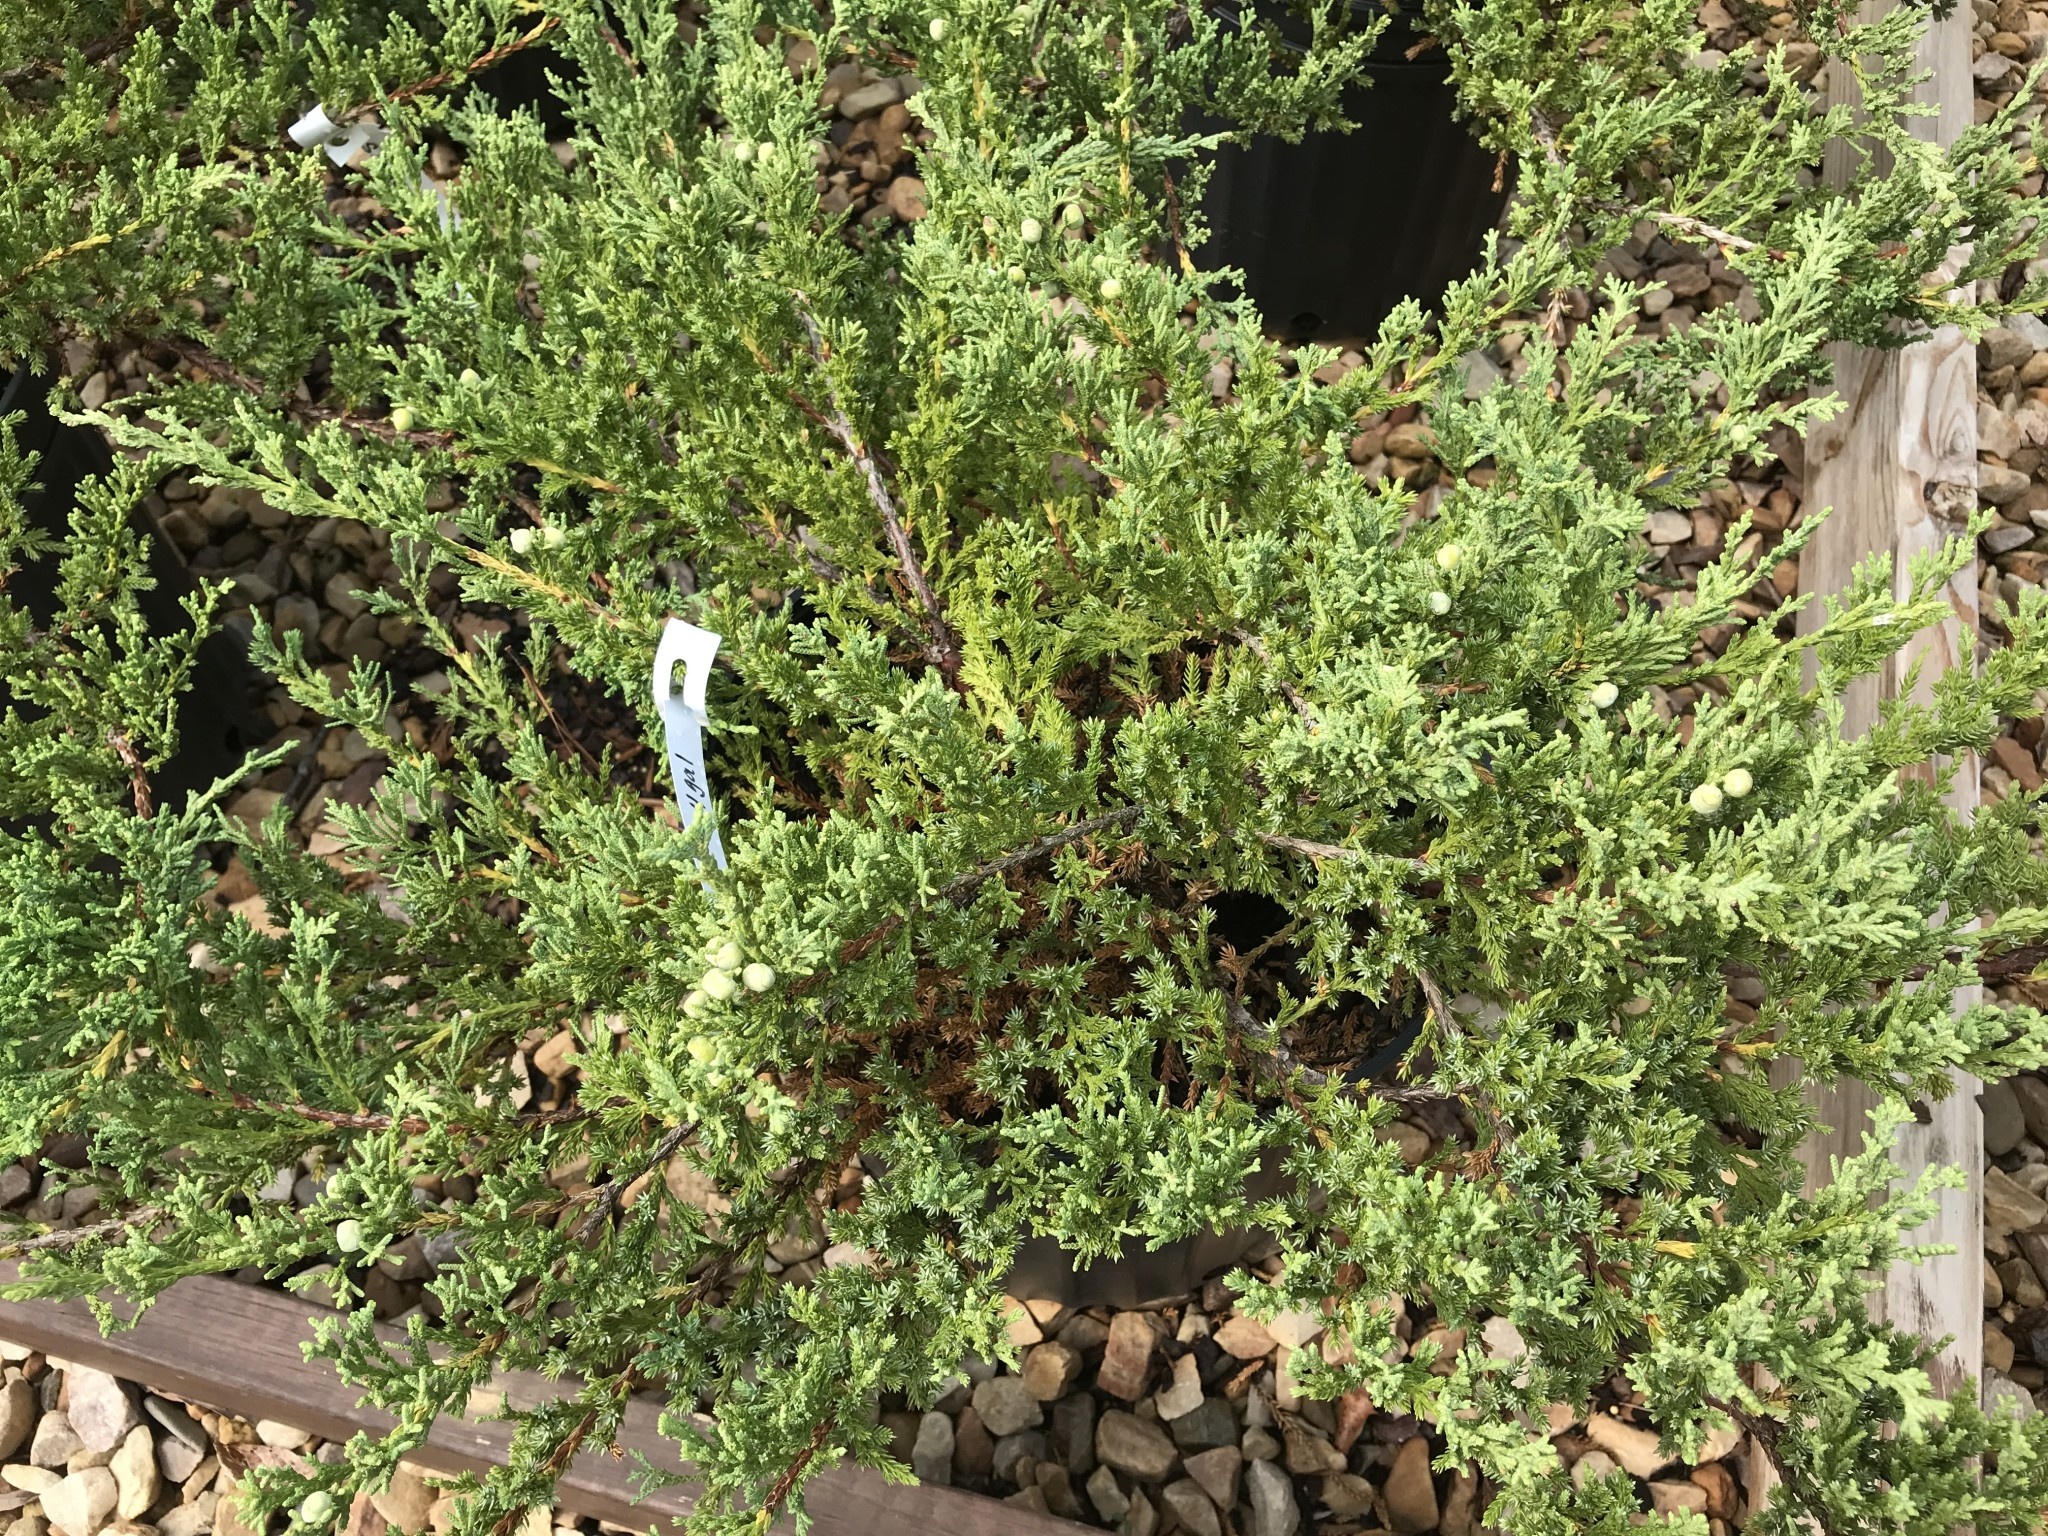 Green Sargent Juniper #4 -- Juniperus chinensis sargentii 'Viridis'